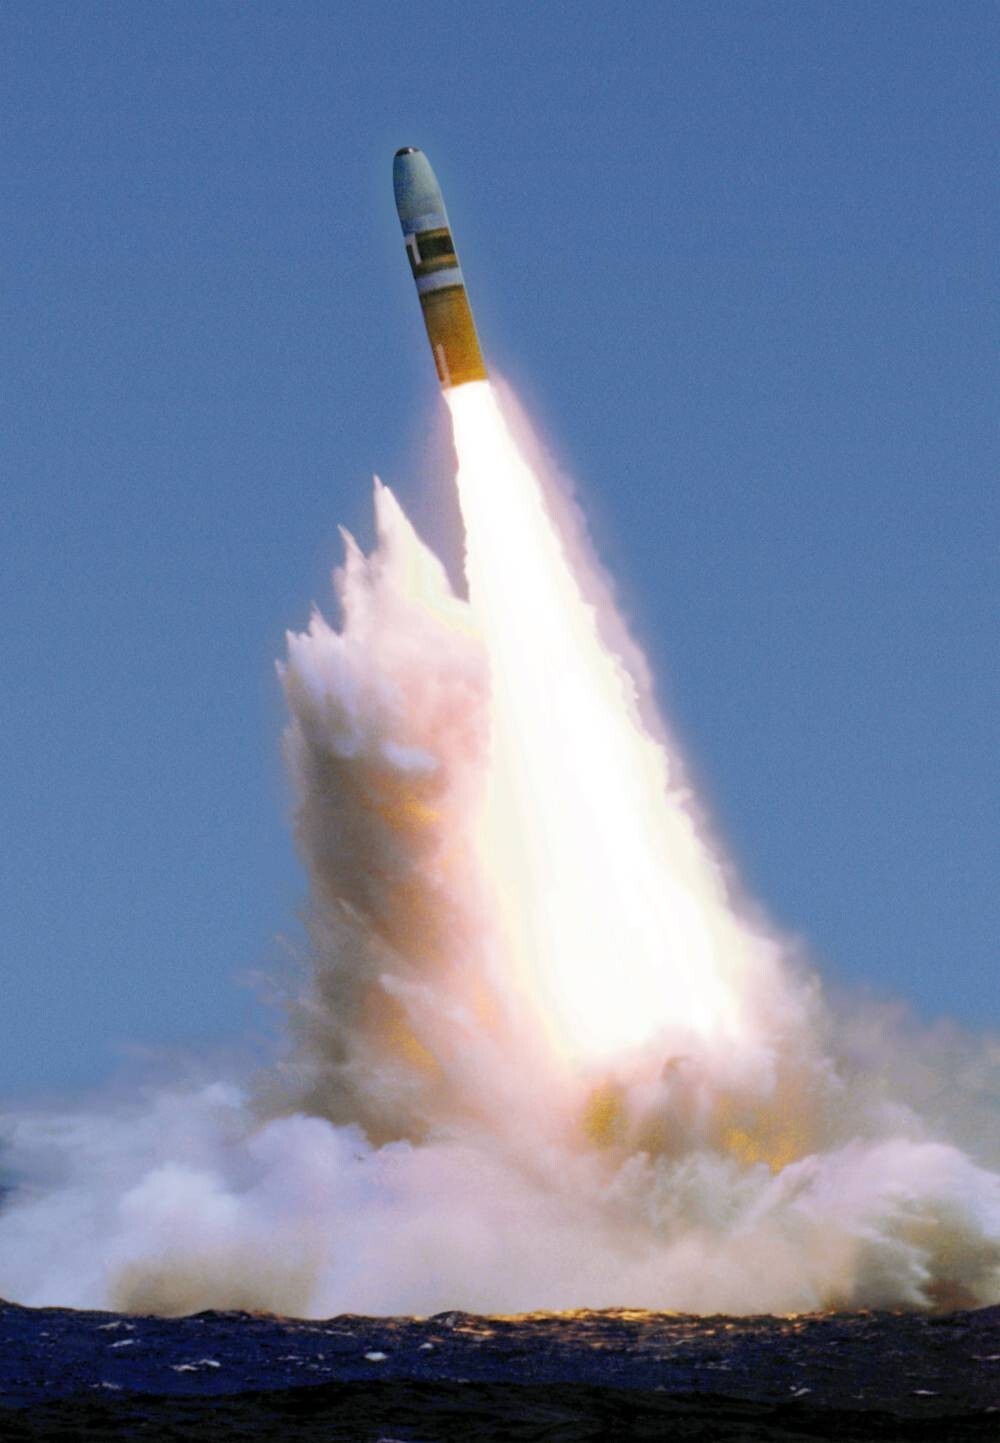 战略导弹,即便是在今天,三叉戟d5依然是全球威力最大的潜射弹道导弹